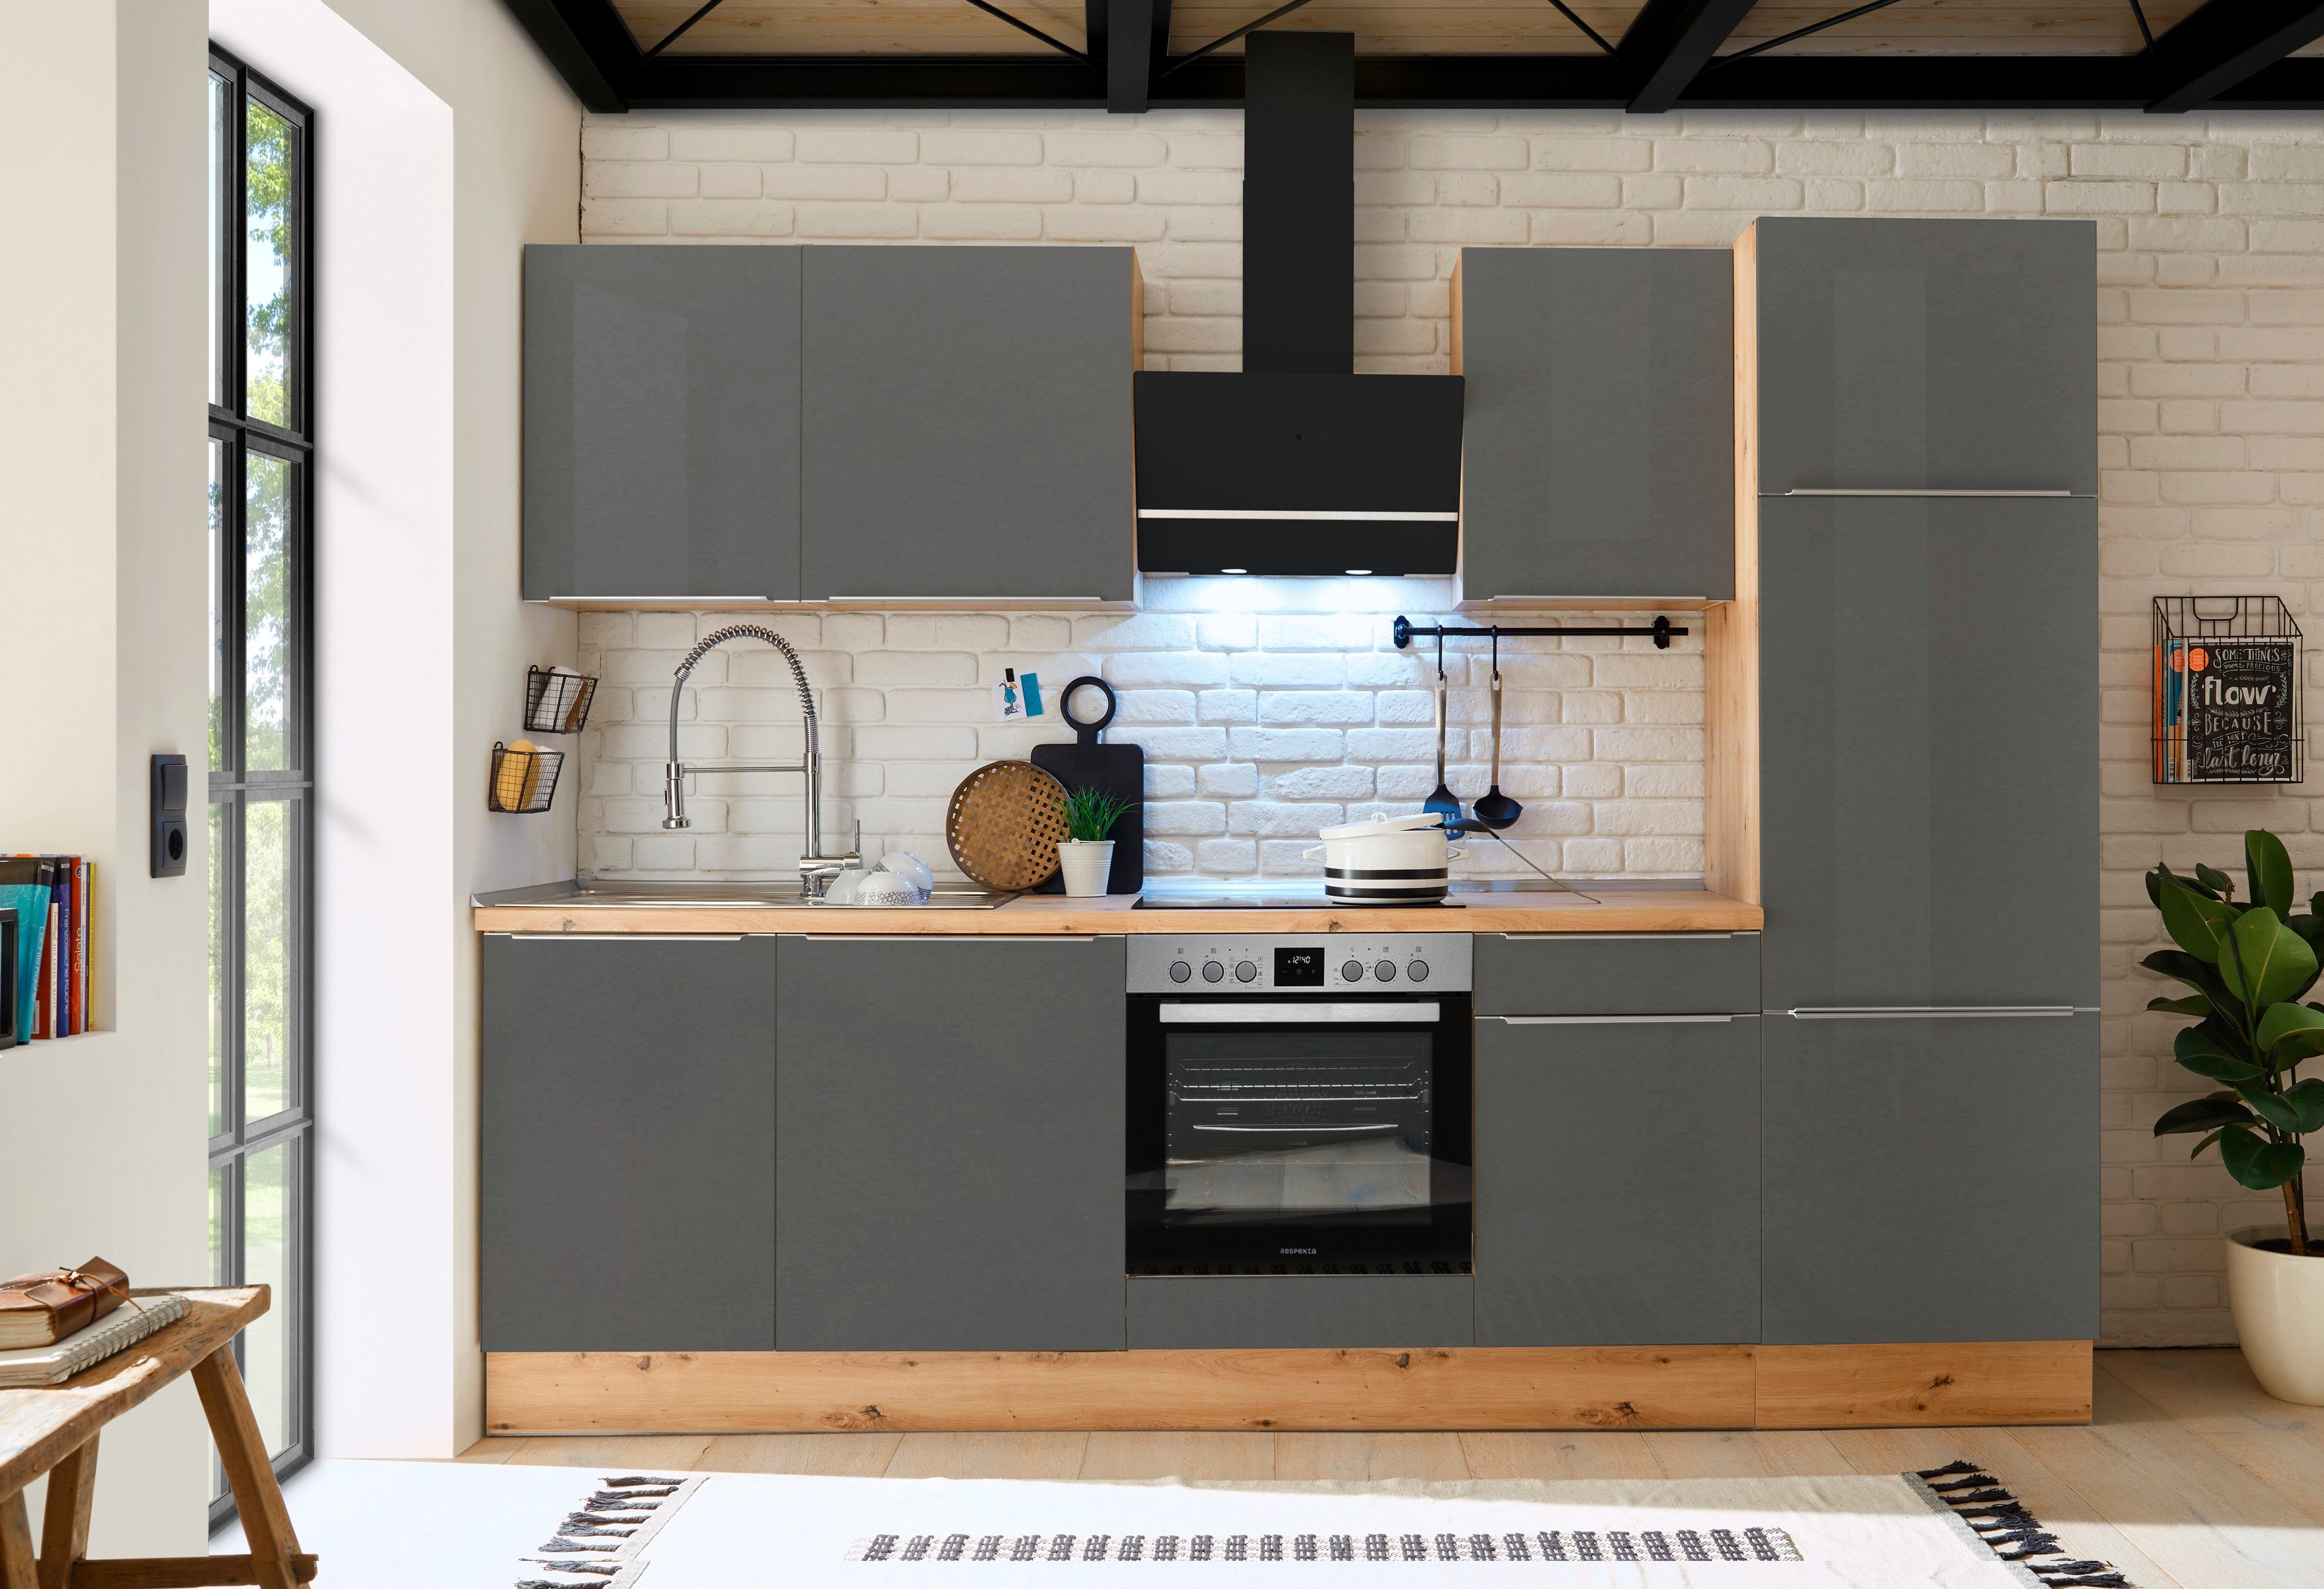 RESPEKTA Küchenzeile Safado aus der Serie Marleen, hochwertige Ausstattung wie Soft Close Funktion, Breite 280 cm grau/artisaneiche | artisaneiche